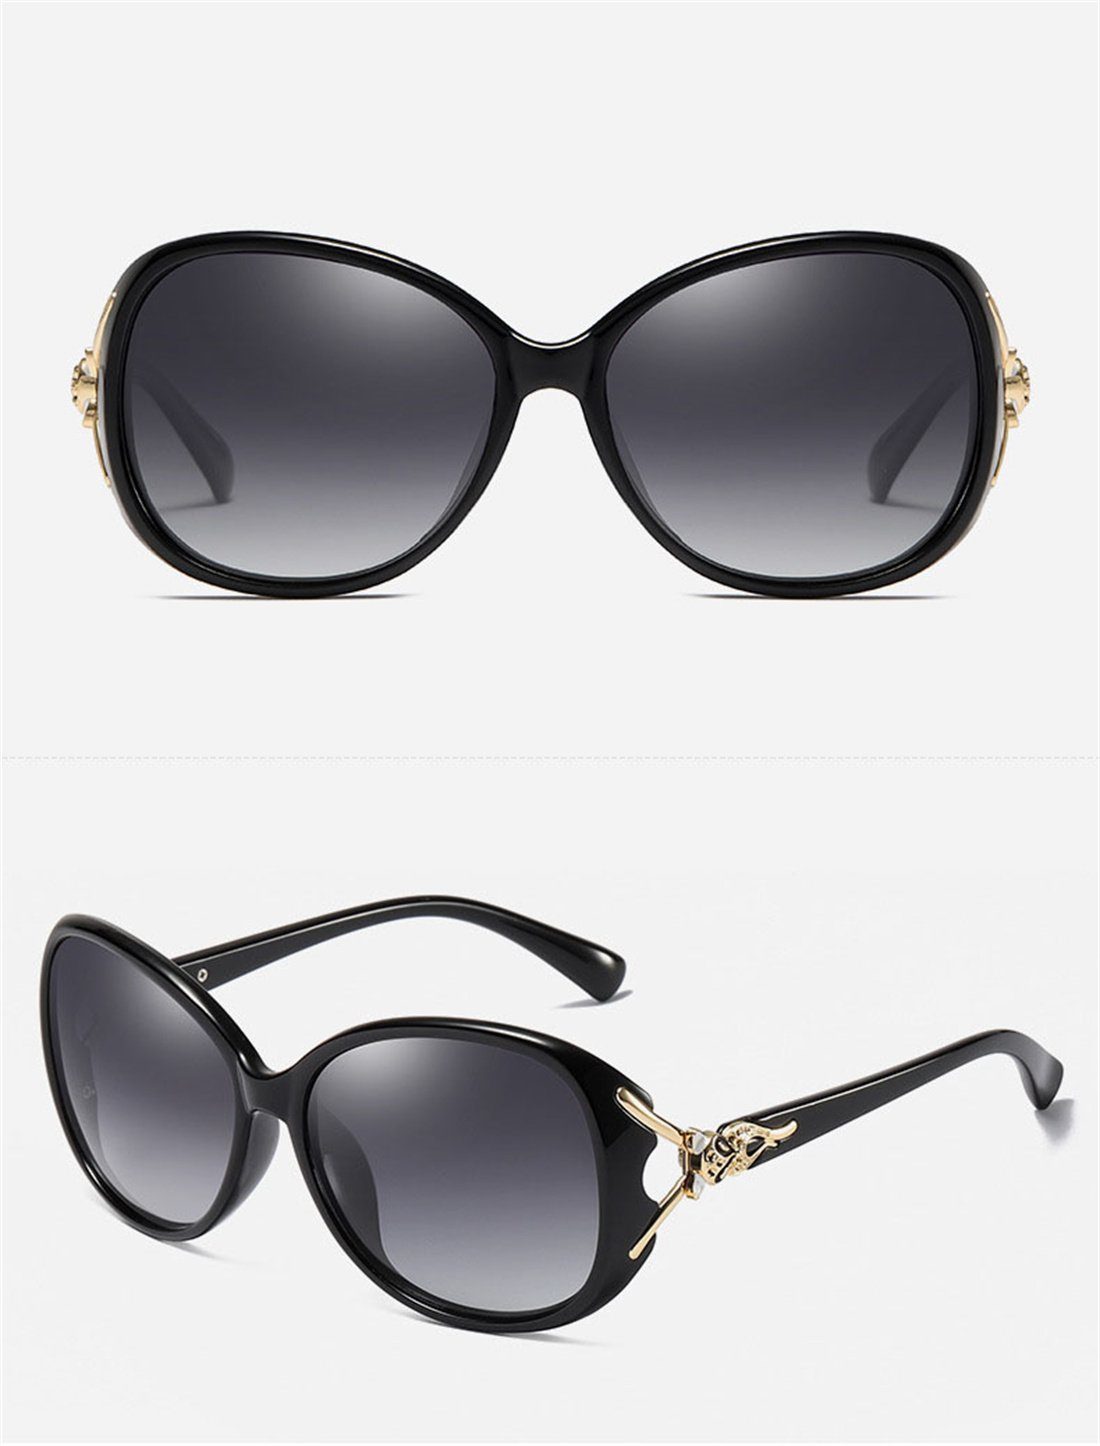 Damen-Sommer-Sonnenbrille, Braun DÖRÖY Sonnenbrille Outdoor-Sonnenbrille Polarisierende